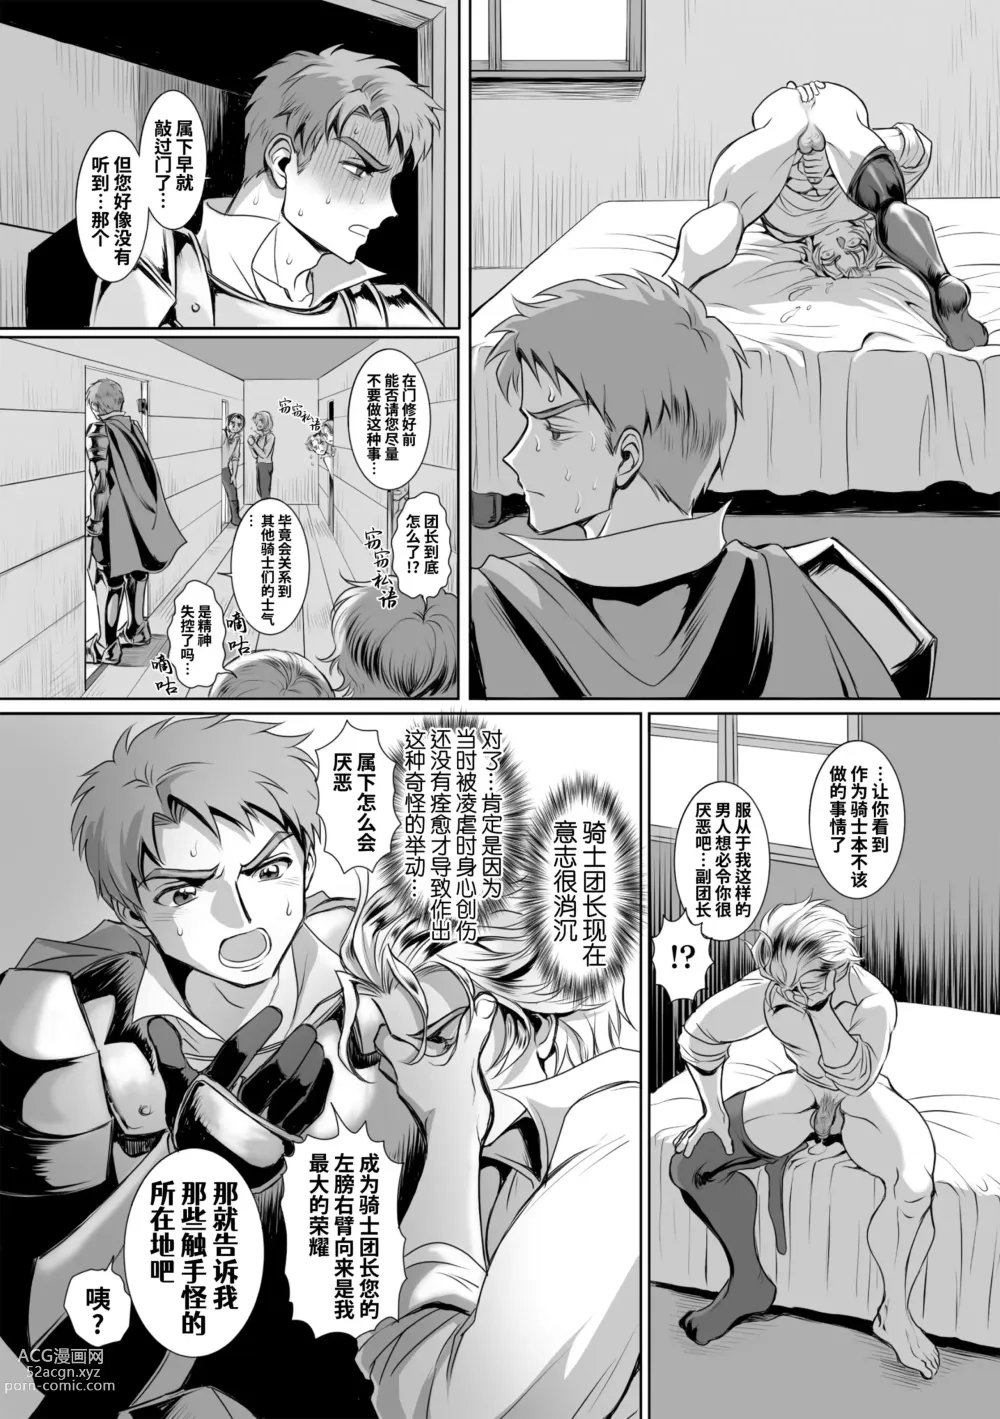 Page 7 of manga 附身奸骑士 斯塔里昂 被恶心男夺取意识凄惨高潮! (decensored)